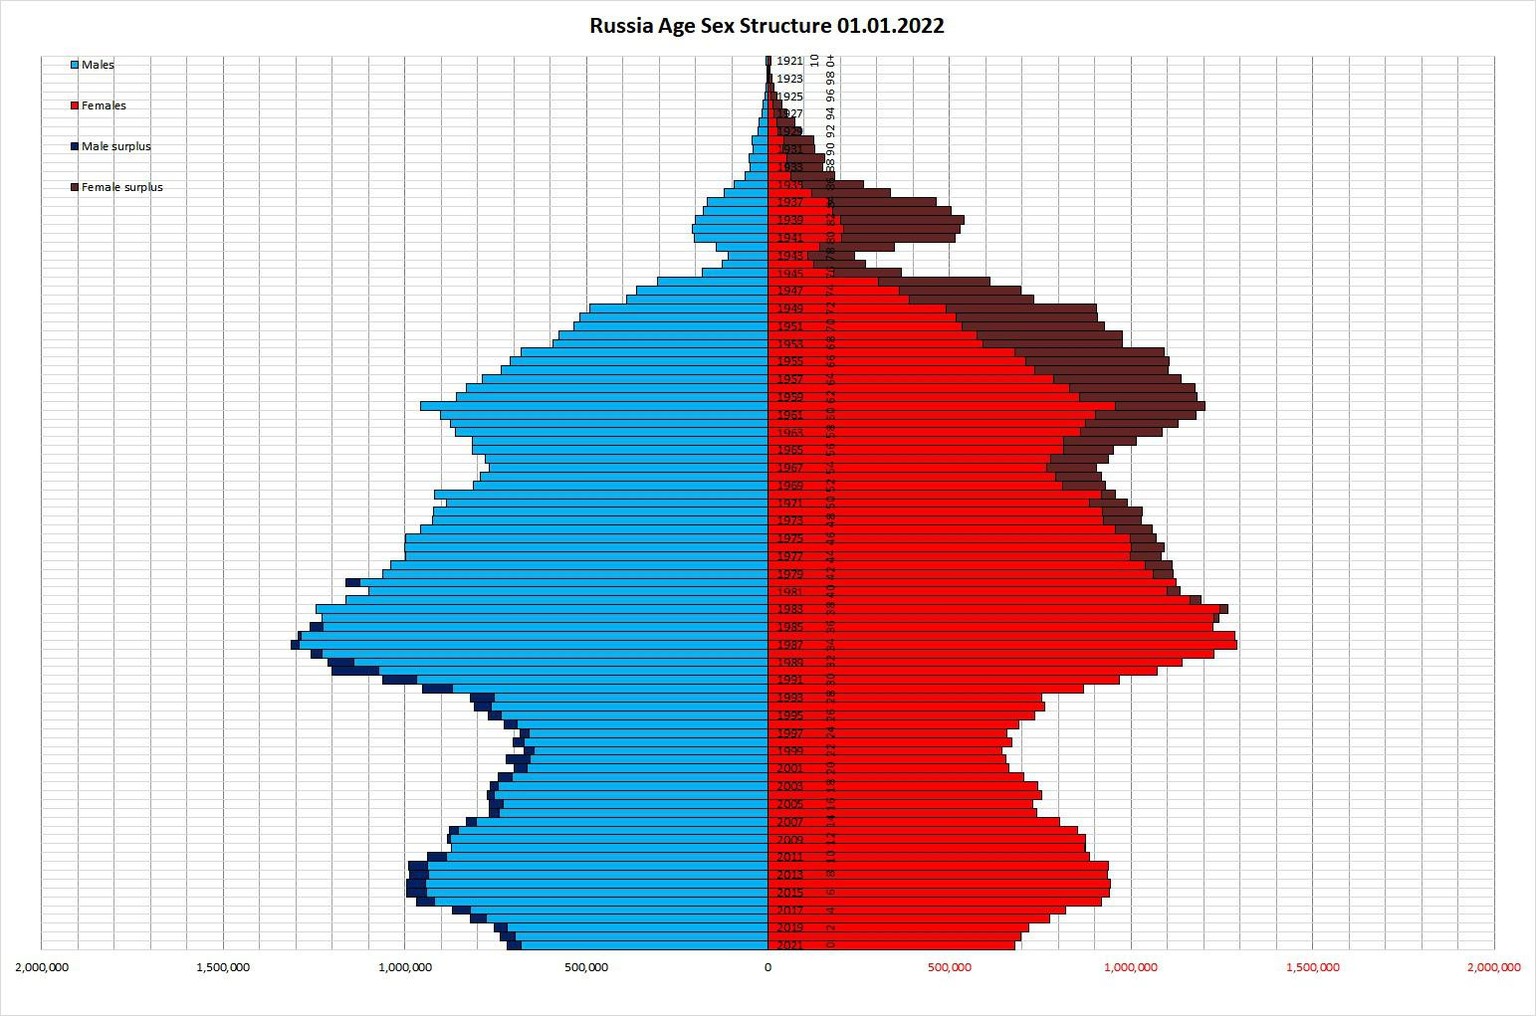 Die aktuelle Bevölkerungspyramide Russlands (Männer: blau, Frauen: rot) zeigt deutlich den massiven Frauenüberschuss ab ca. dem 40. Altersjahr und die Delle beim Jahrgang 1943, dem geburtenschwächsten Kriegsjahr. Deutlich erkennbar ist auch die Delle der in den späten Neunzigern Geborenen.    